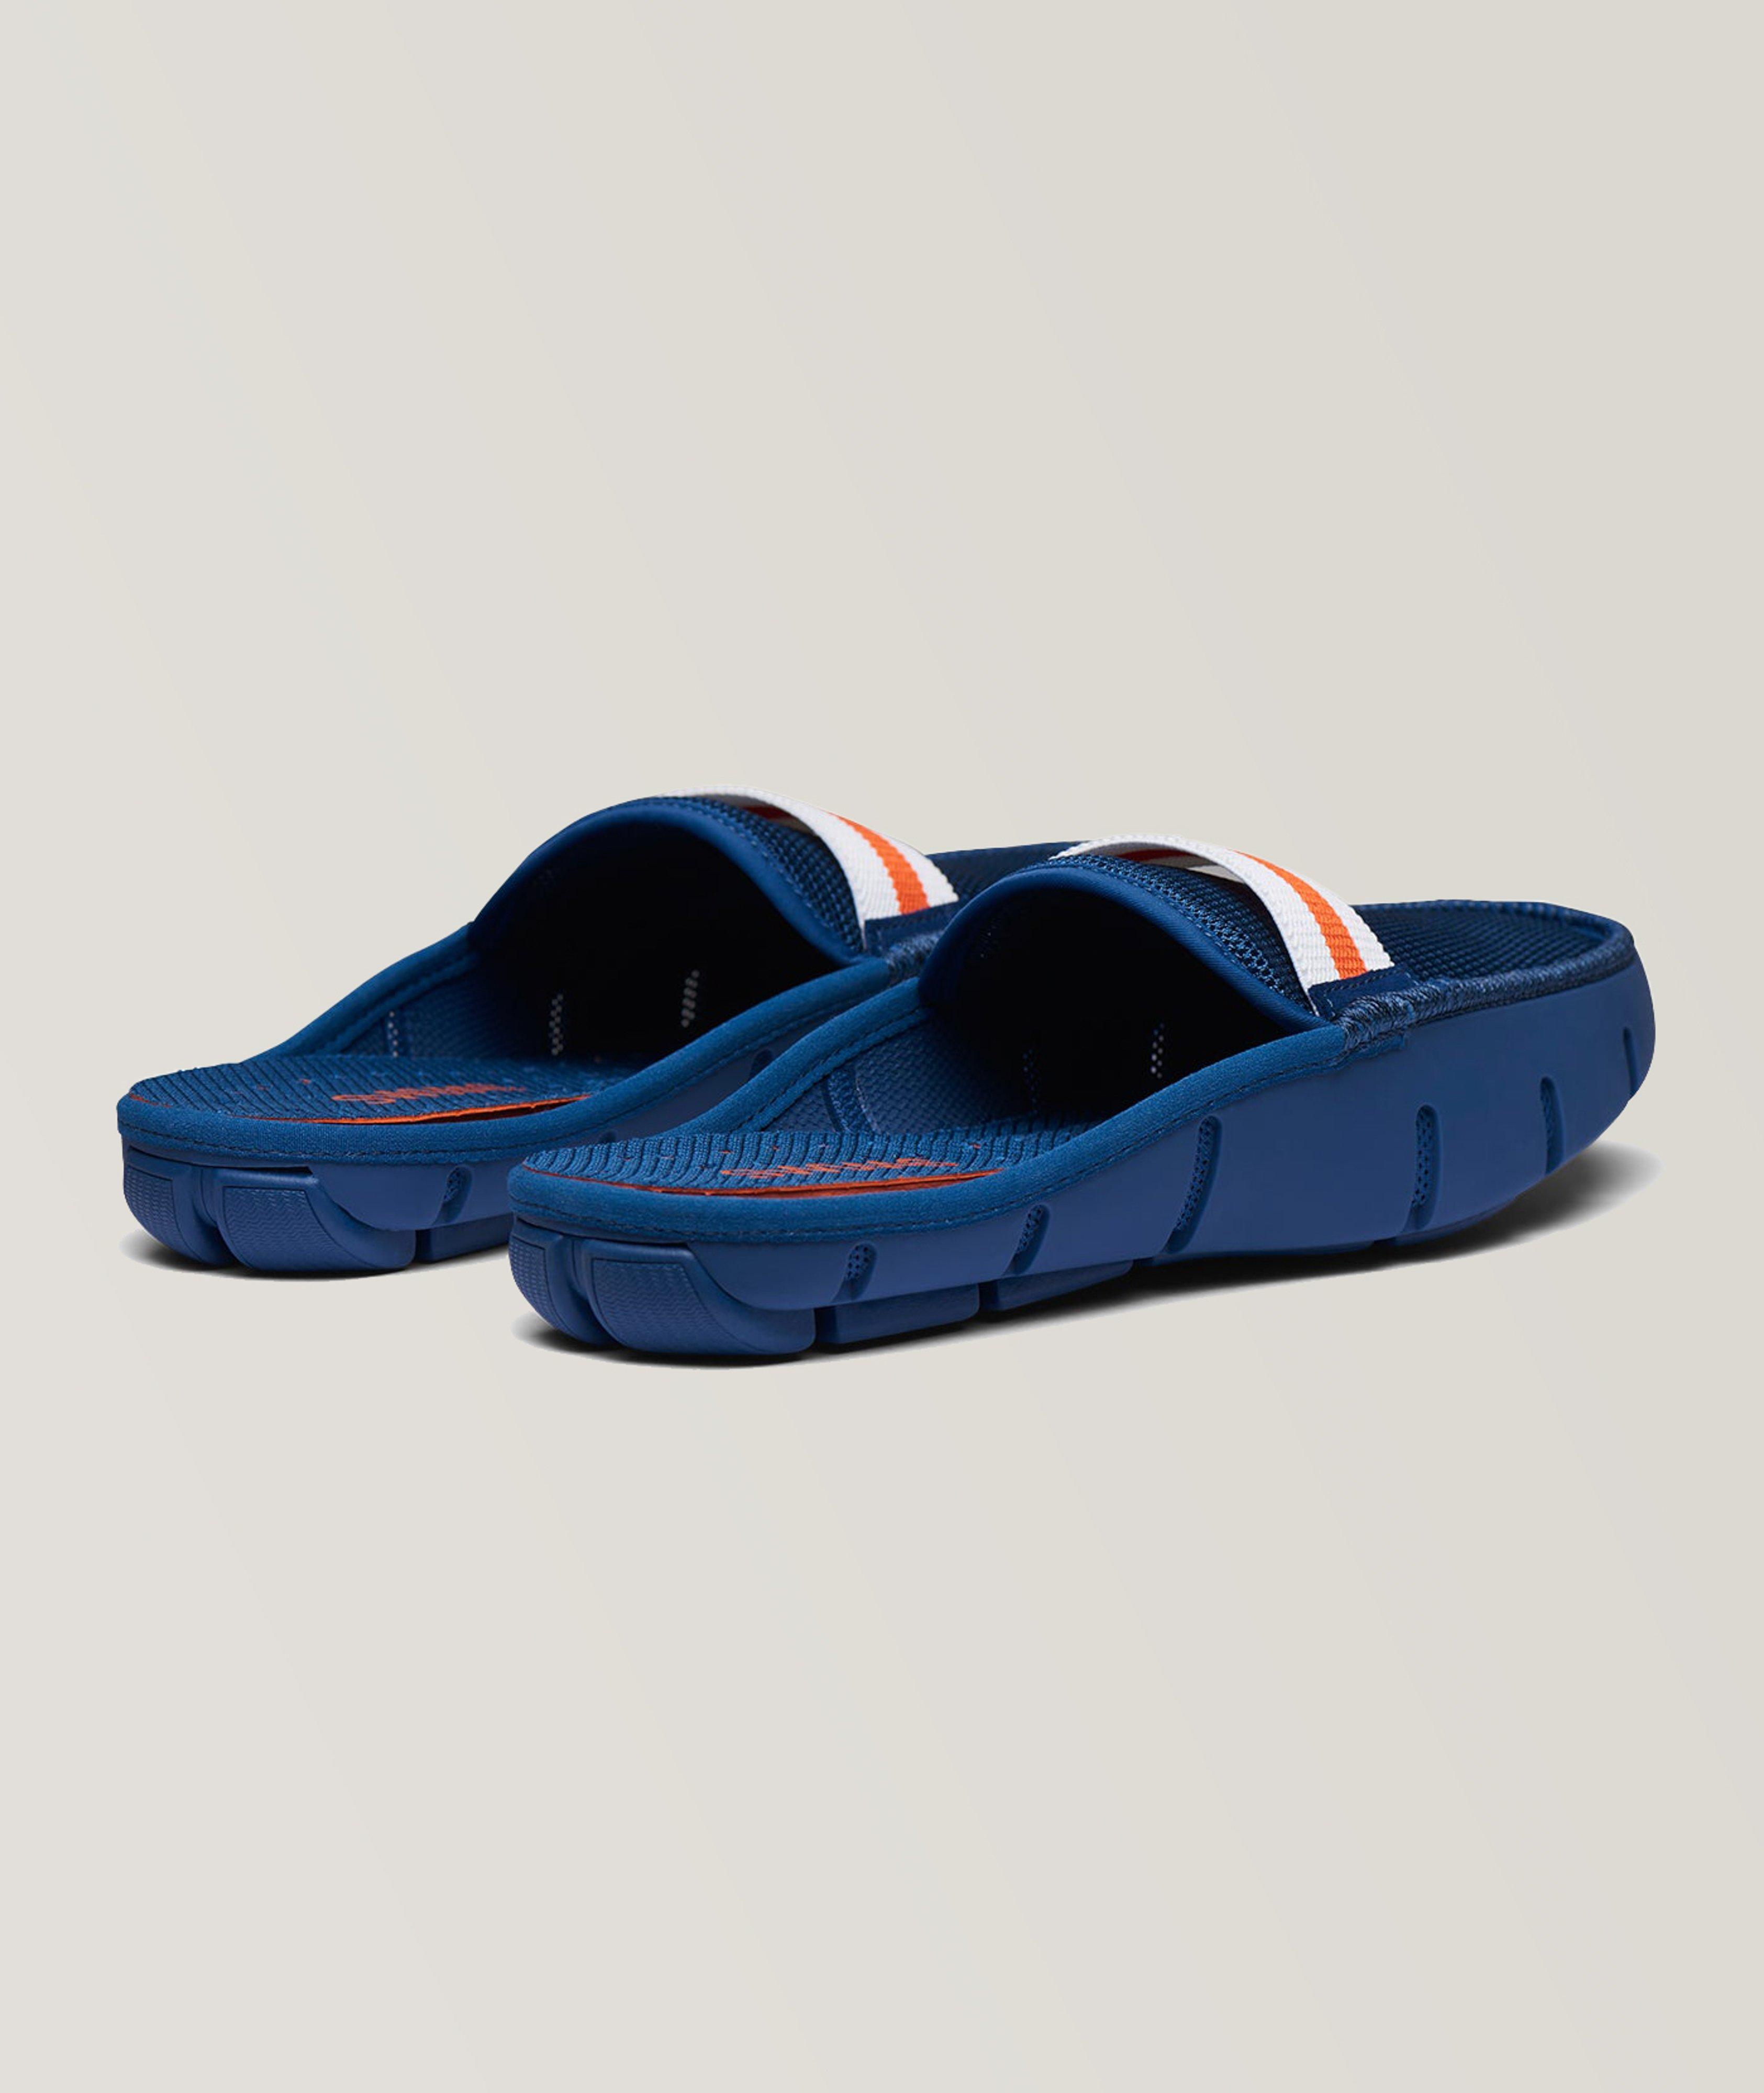 Slide Loafers image 1